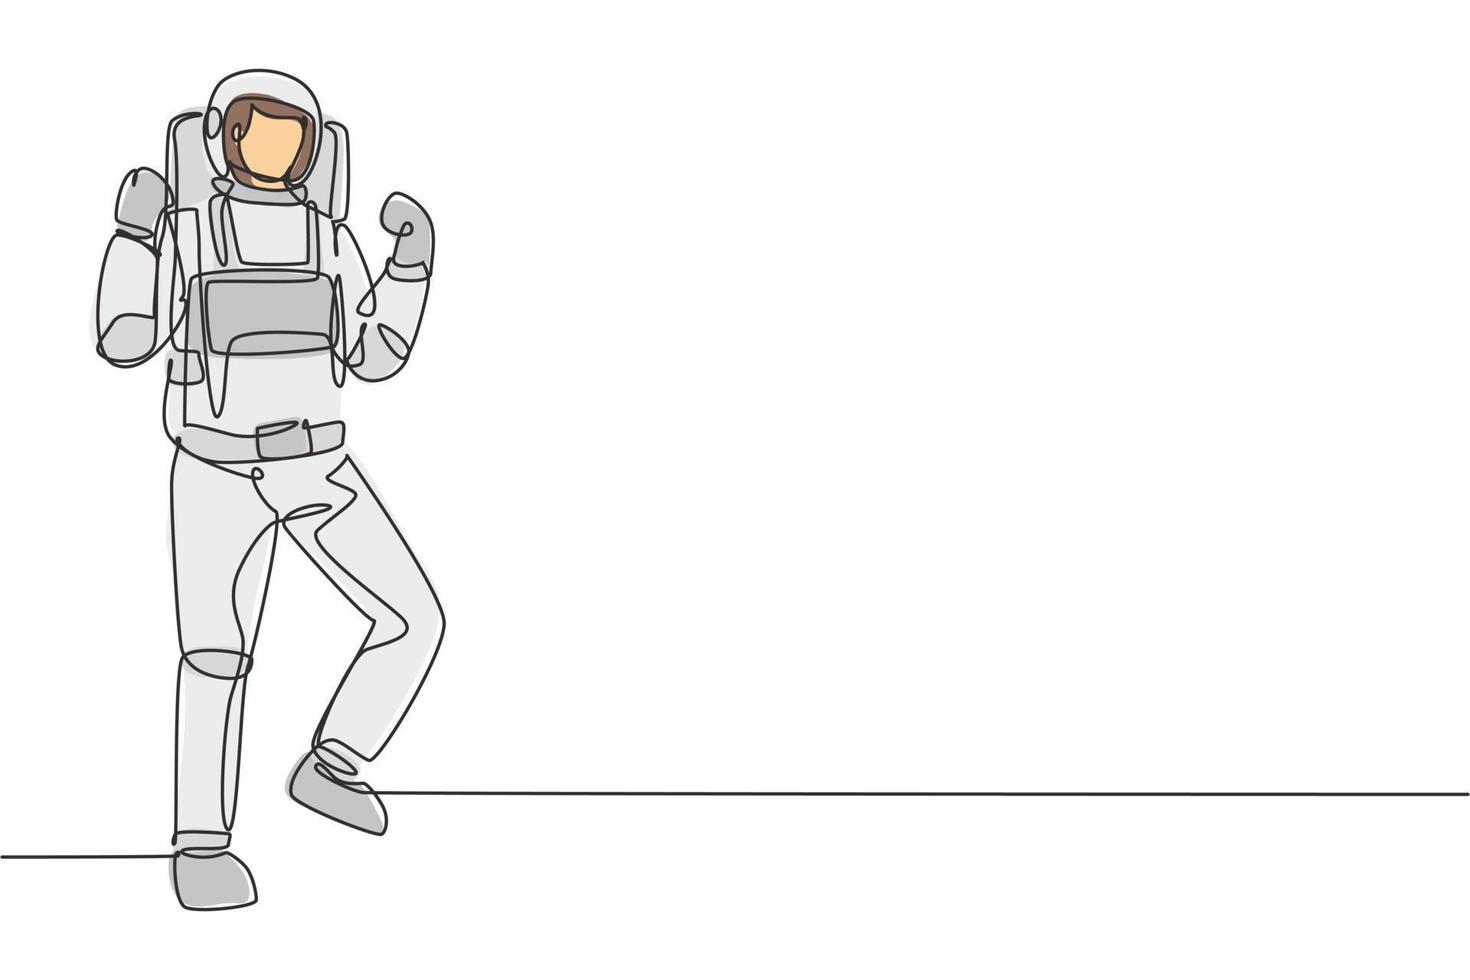 Un astronaute de dessin en ligne continue unique se tient debout avec un geste de célébration portant une combinaison spatiale explorant la terre, la lune et d'autres planètes de l'univers. Une ligne dynamique dessiner illustration vectorielle de conception graphique vecteur